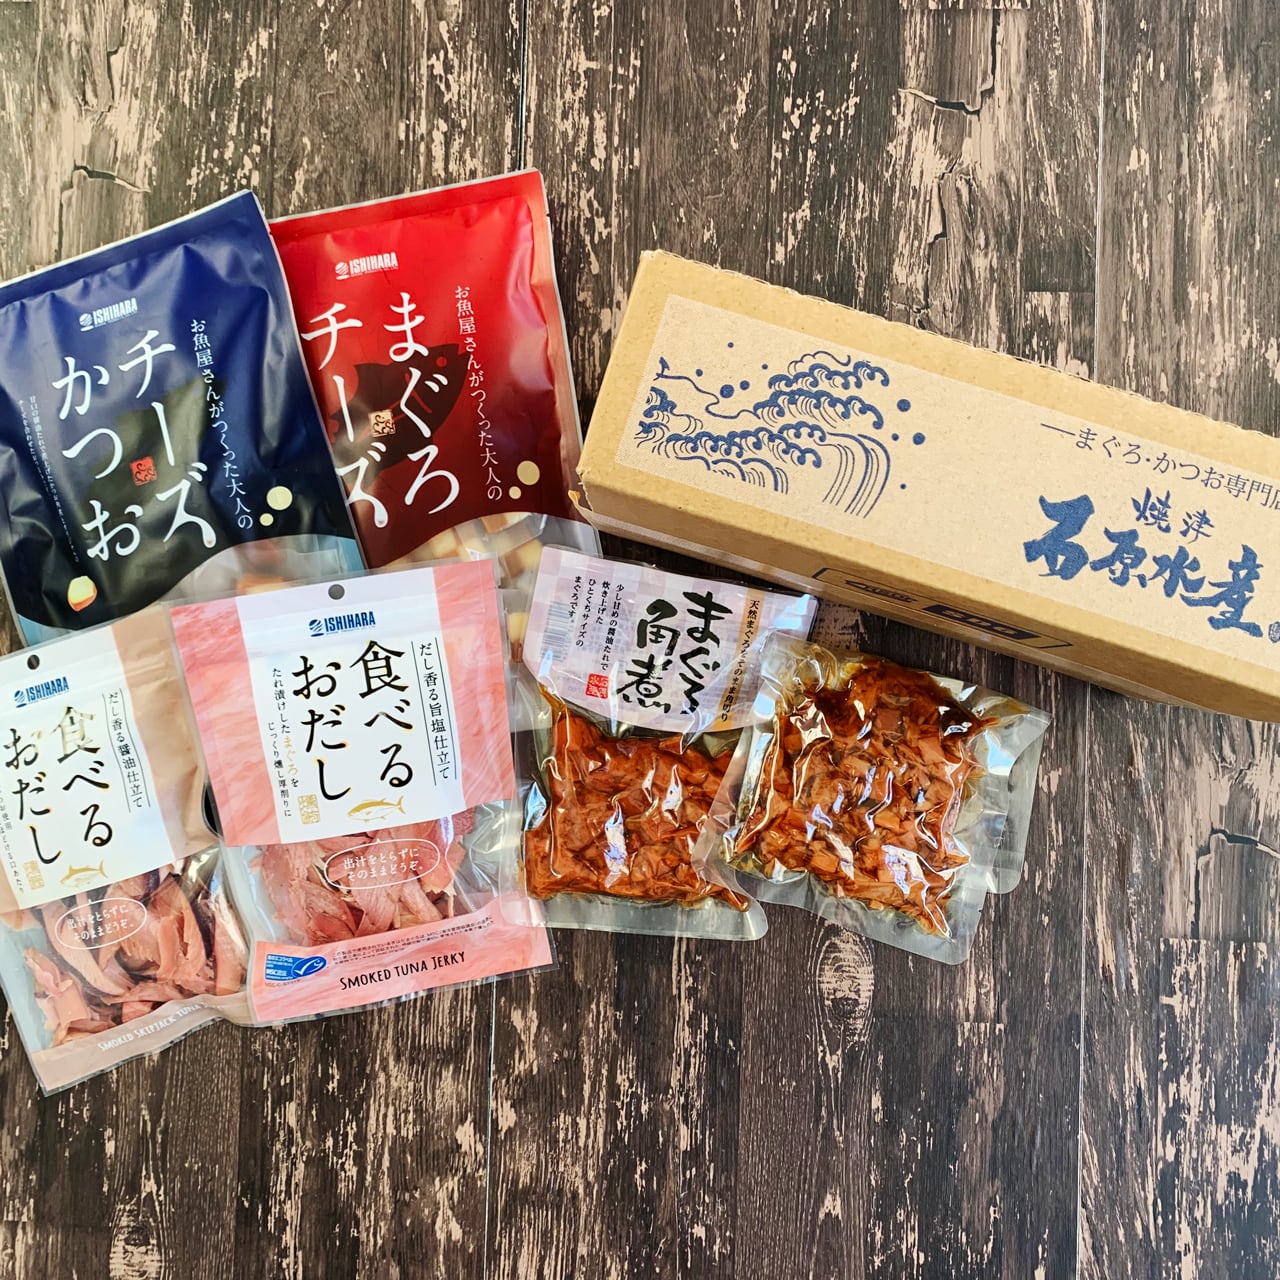 【焼津市】大満足！石原水産が贈るまぐろとかつおの食べ比べセット　customer　tuna　Ishihara　bonito　set　SURUGA　[Yaizu　City]　satisfaction!　and　Great　Suisan's　SELECTION